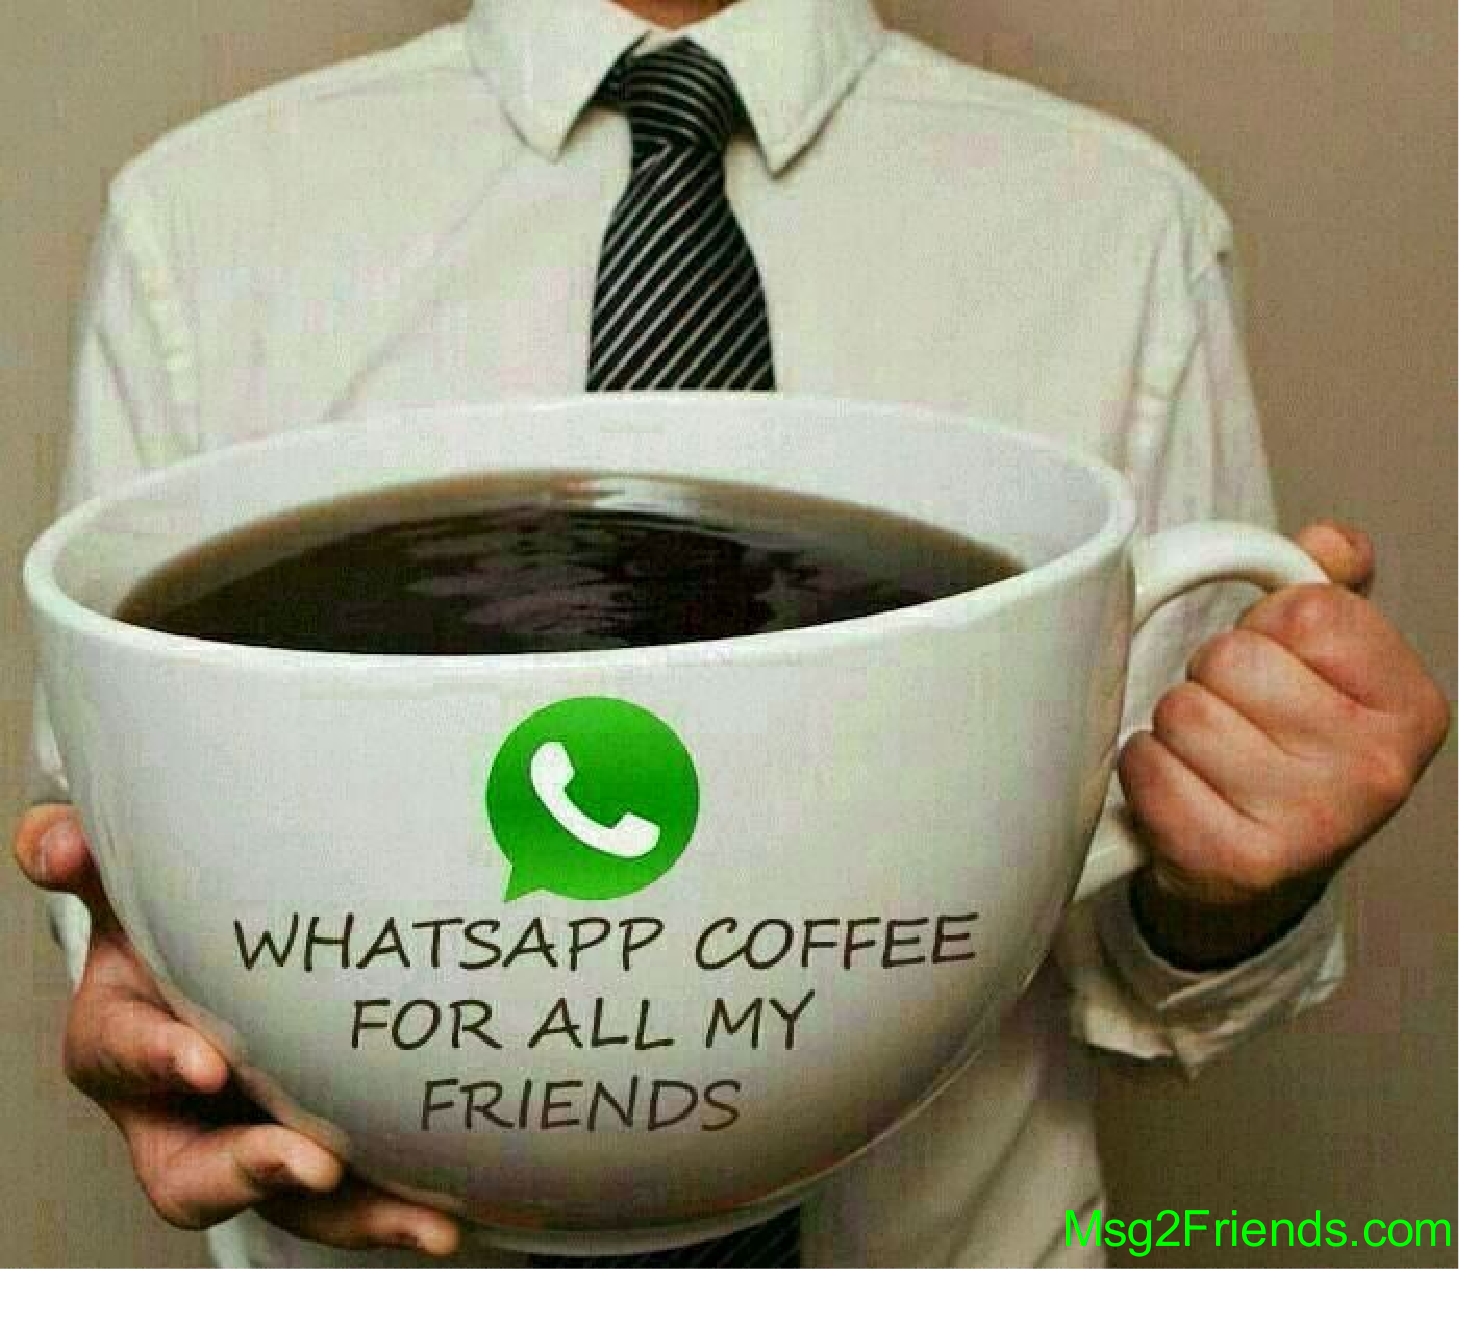 bon fond d'écran du matin pour whatsapp,coupe,coupe,tasse à café,caféine,agresser